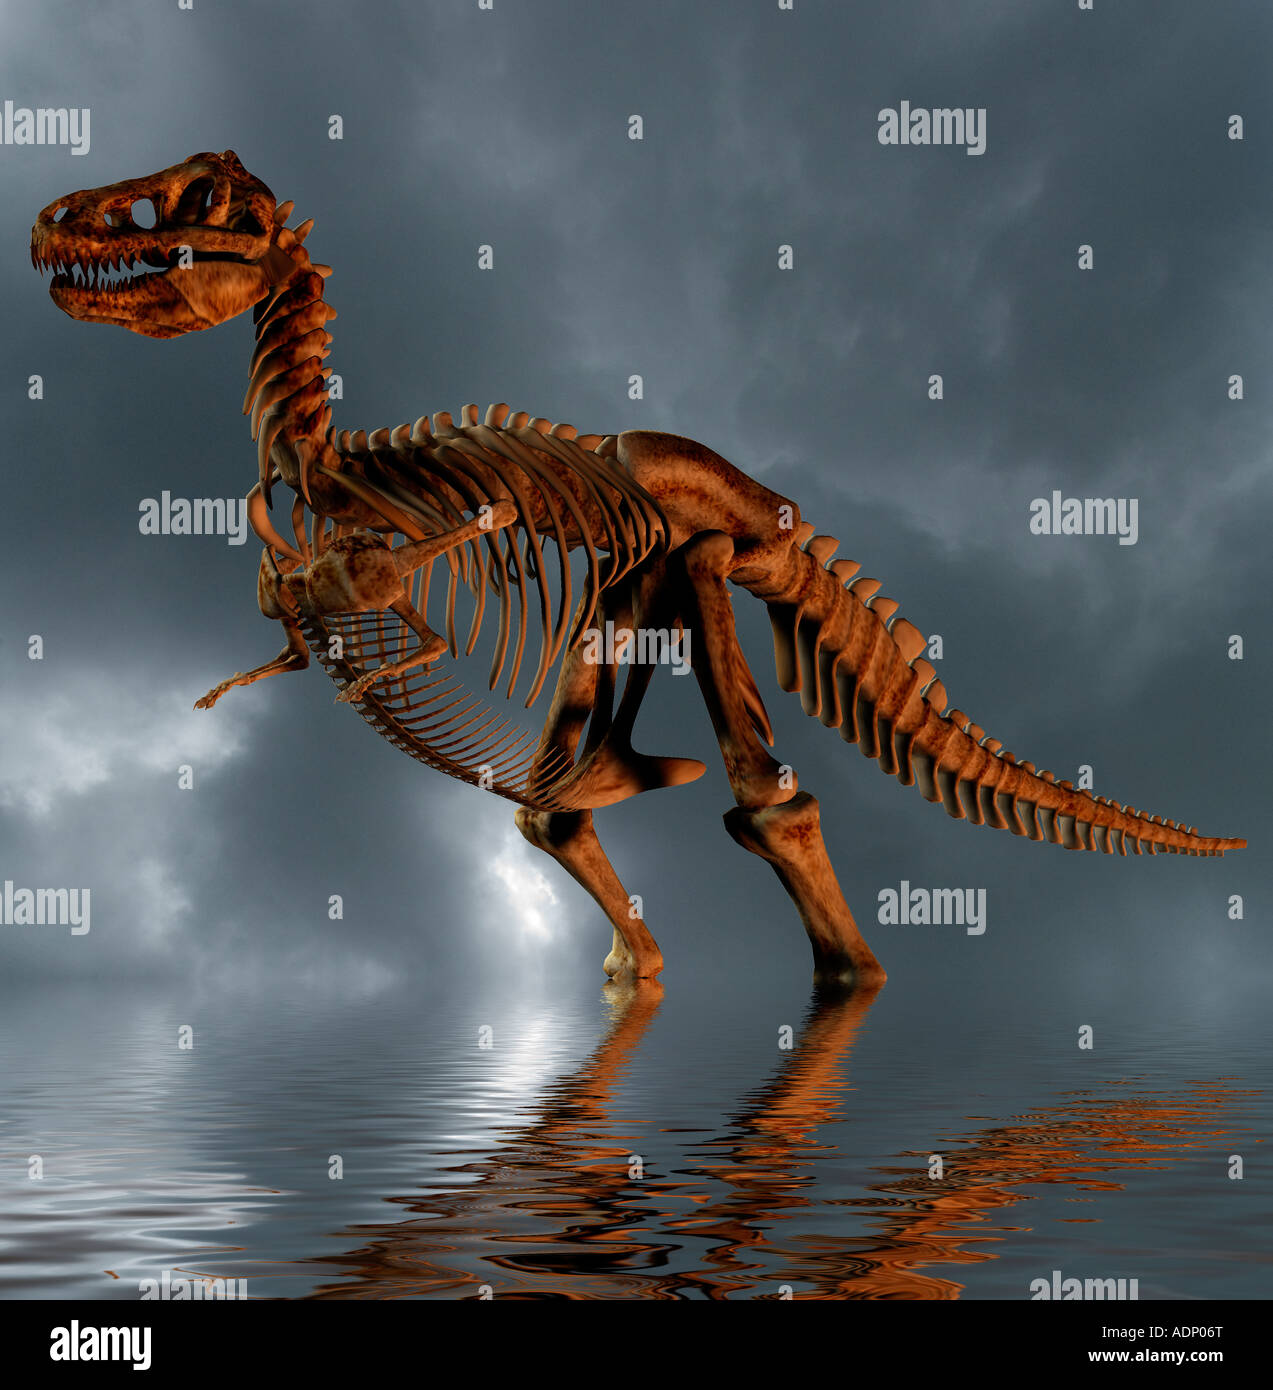 computergenerierte Konzept eine prähistorische Dinosaurier-Skelett in einem flachen See Stockfoto